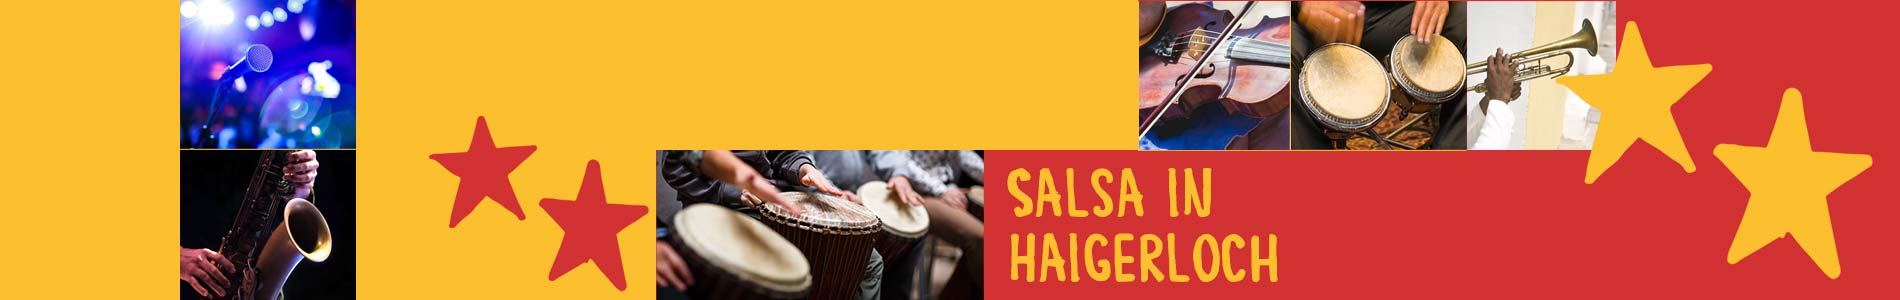 Salsa in Haigerloch – Salsa lernen und tanzen, Tanzkurse, Partys, Veranstaltungen